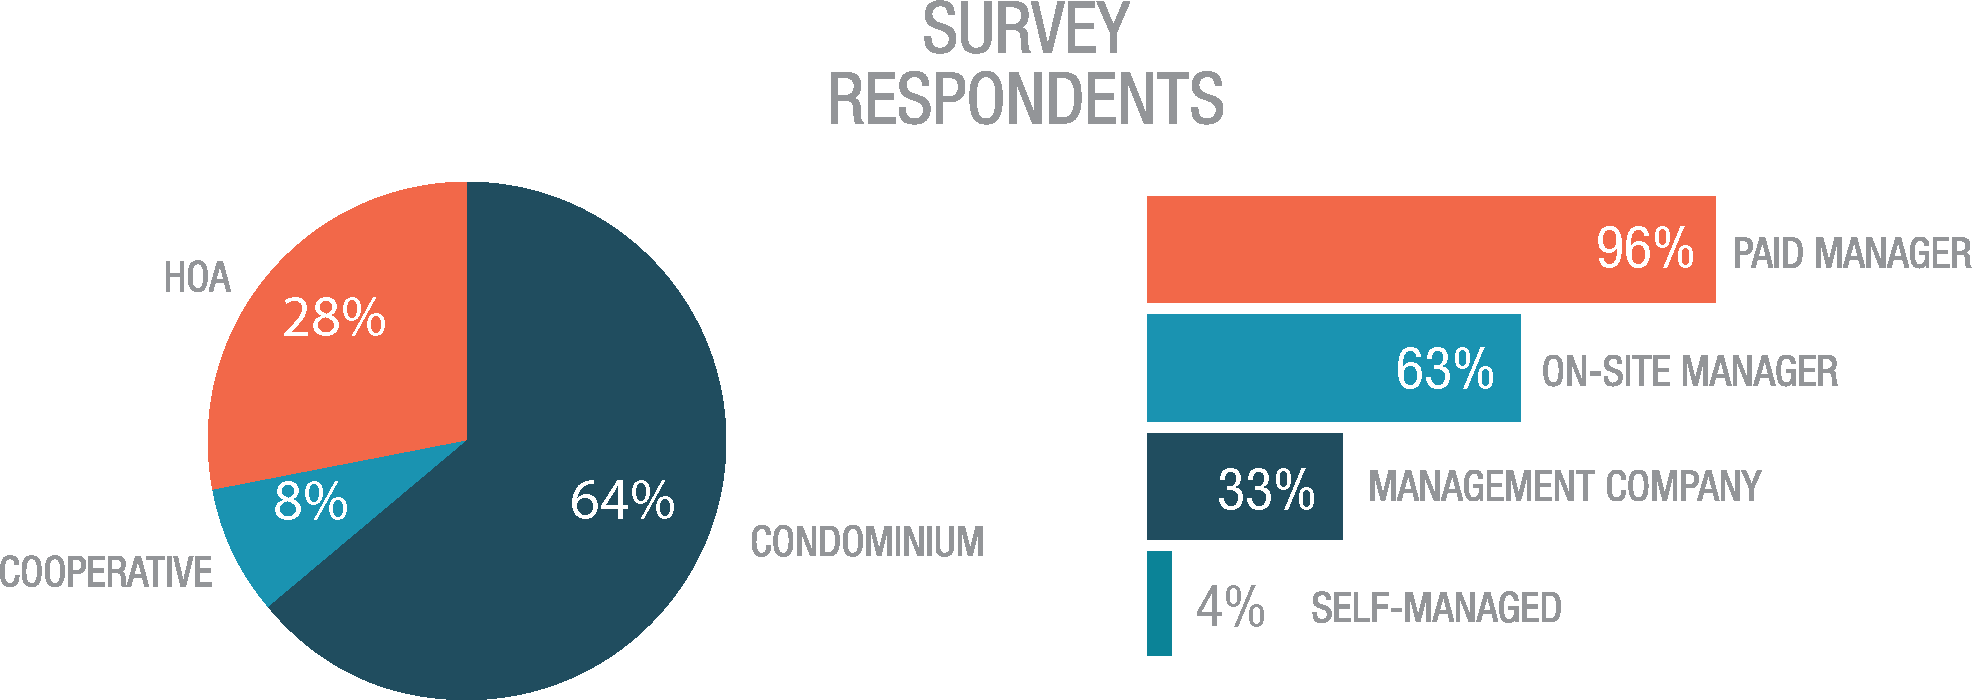 Survey Respondents